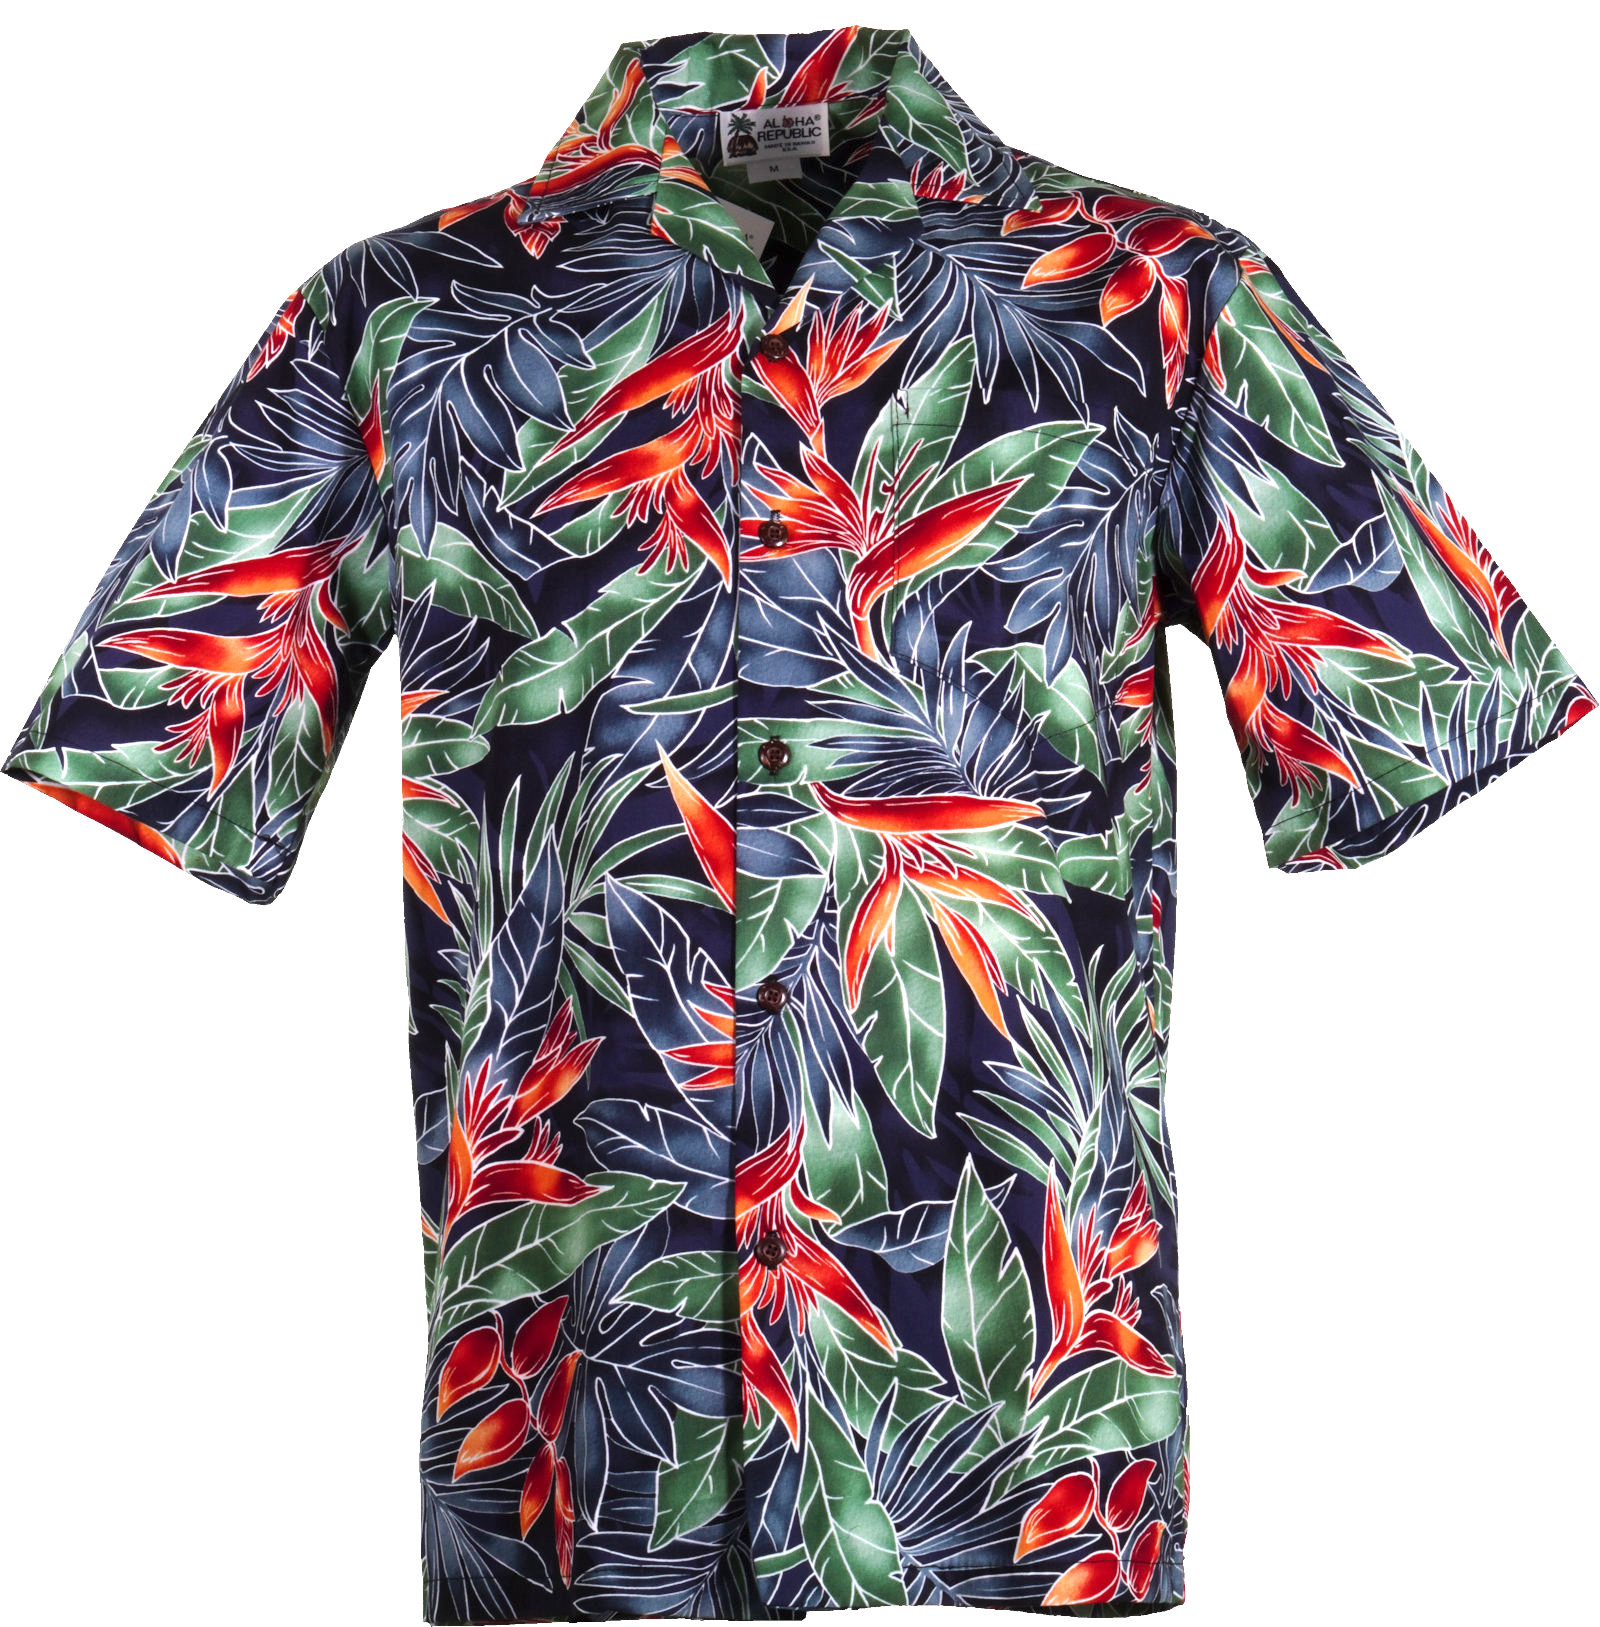 Hawaiihemden herren - Die TOP Auswahl unter den analysierten Hawaiihemden herren!